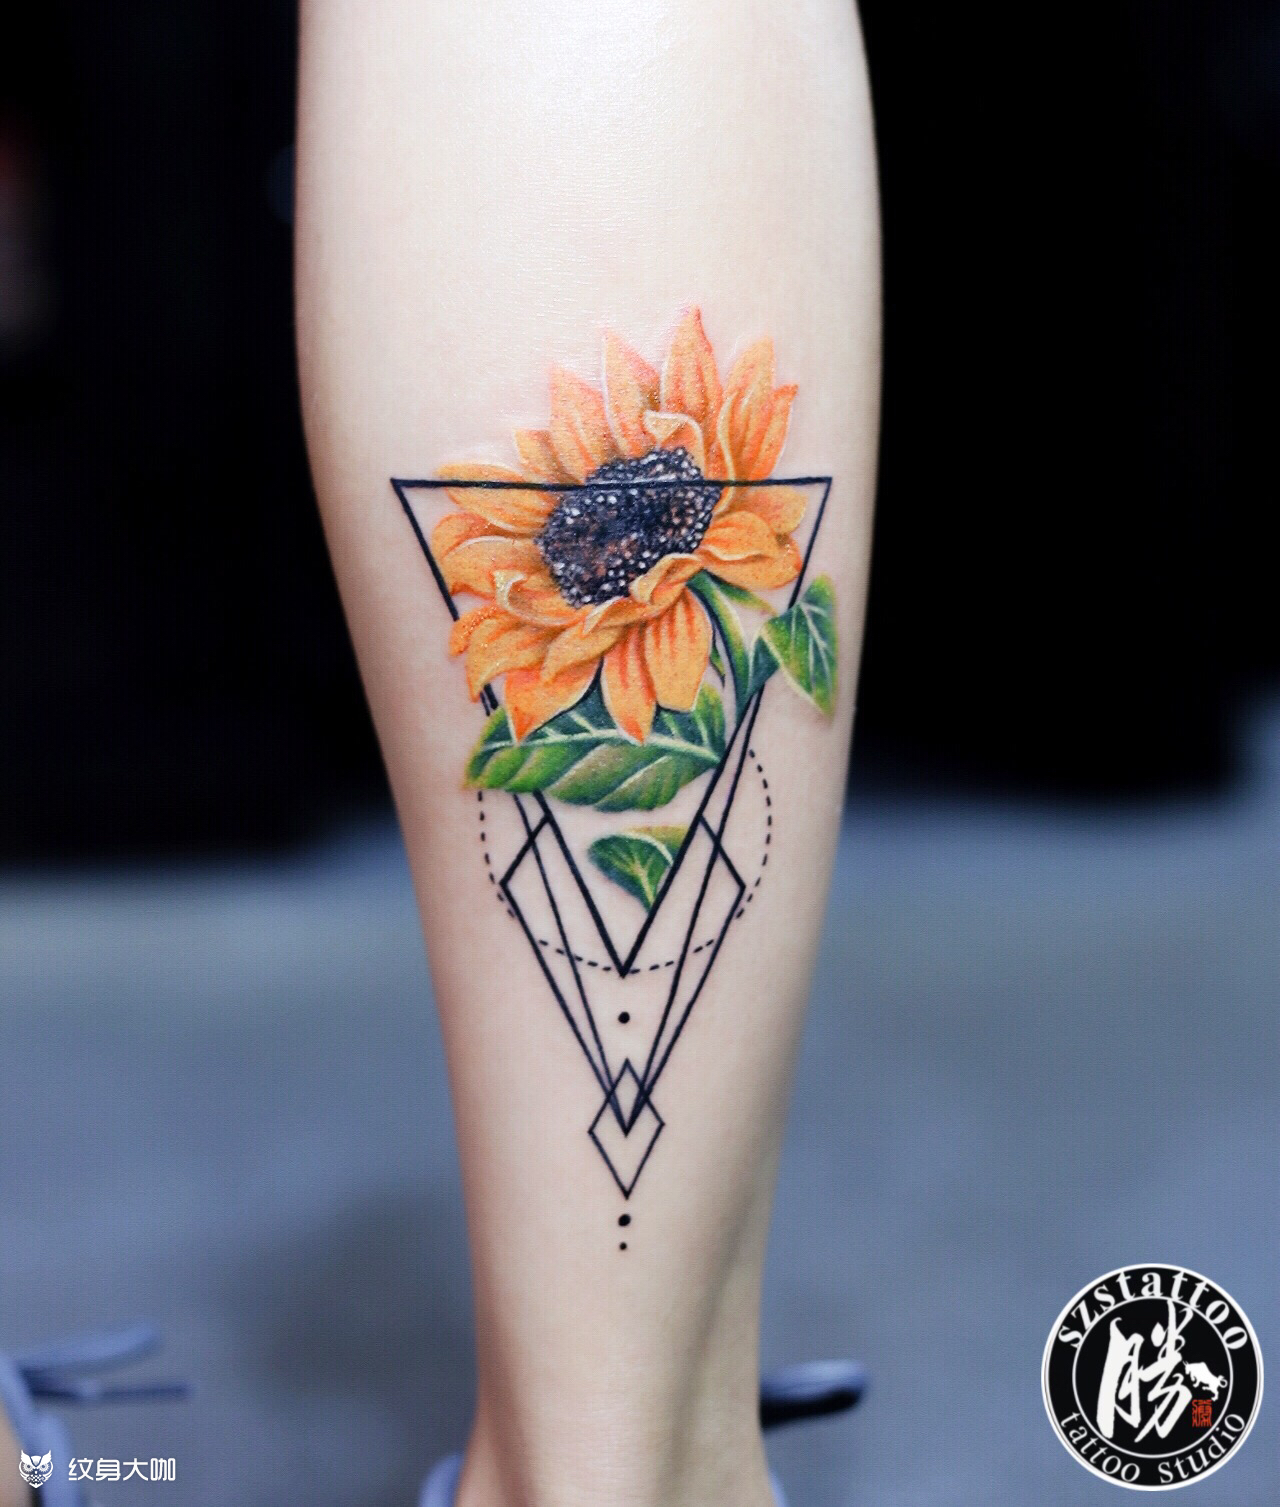 彩色太阳花 算是彩色与几何图碰撞出的 大清晰 了叭 Tattoo By 勝 纹身大咖图库